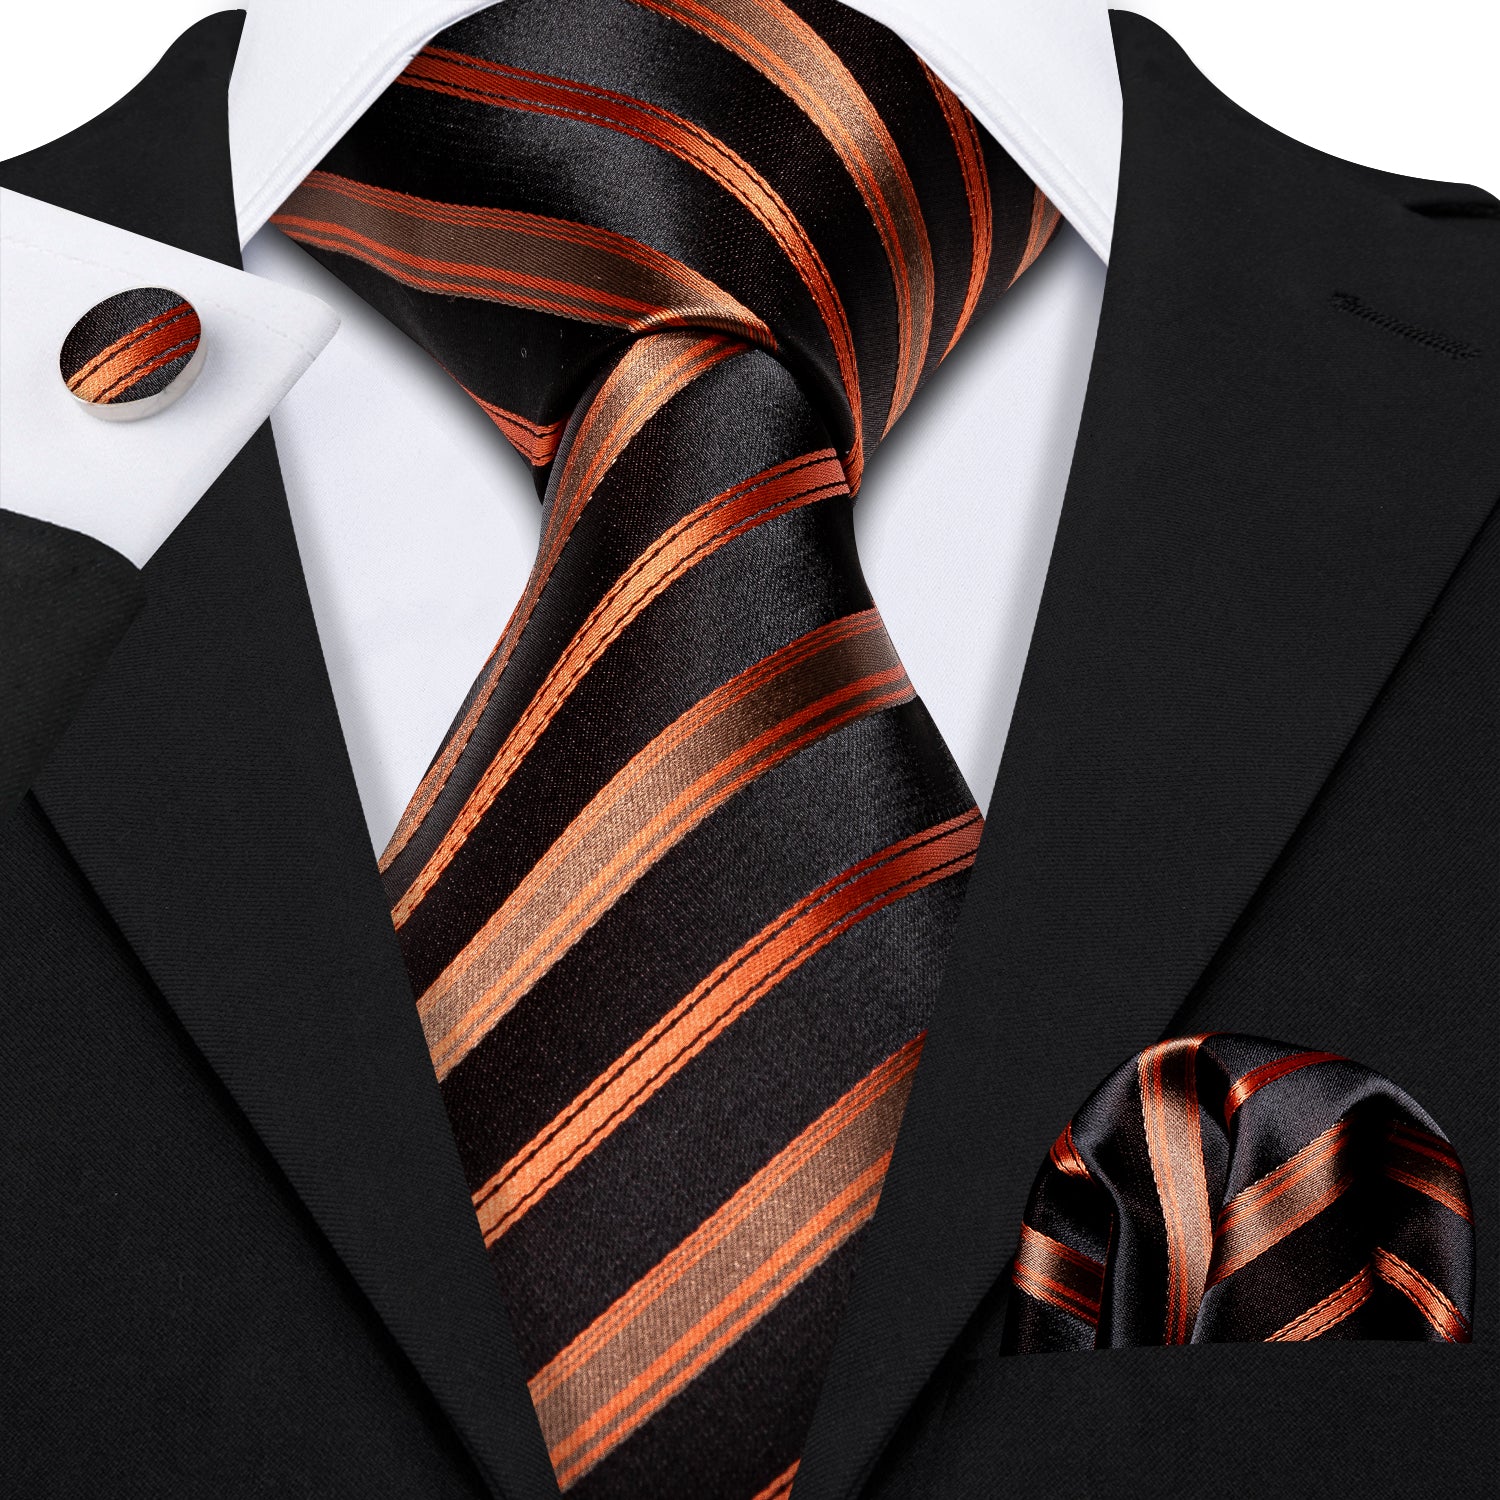 Striped Neck Ties For Men Wedding Party Green Necktie Hanky Tie